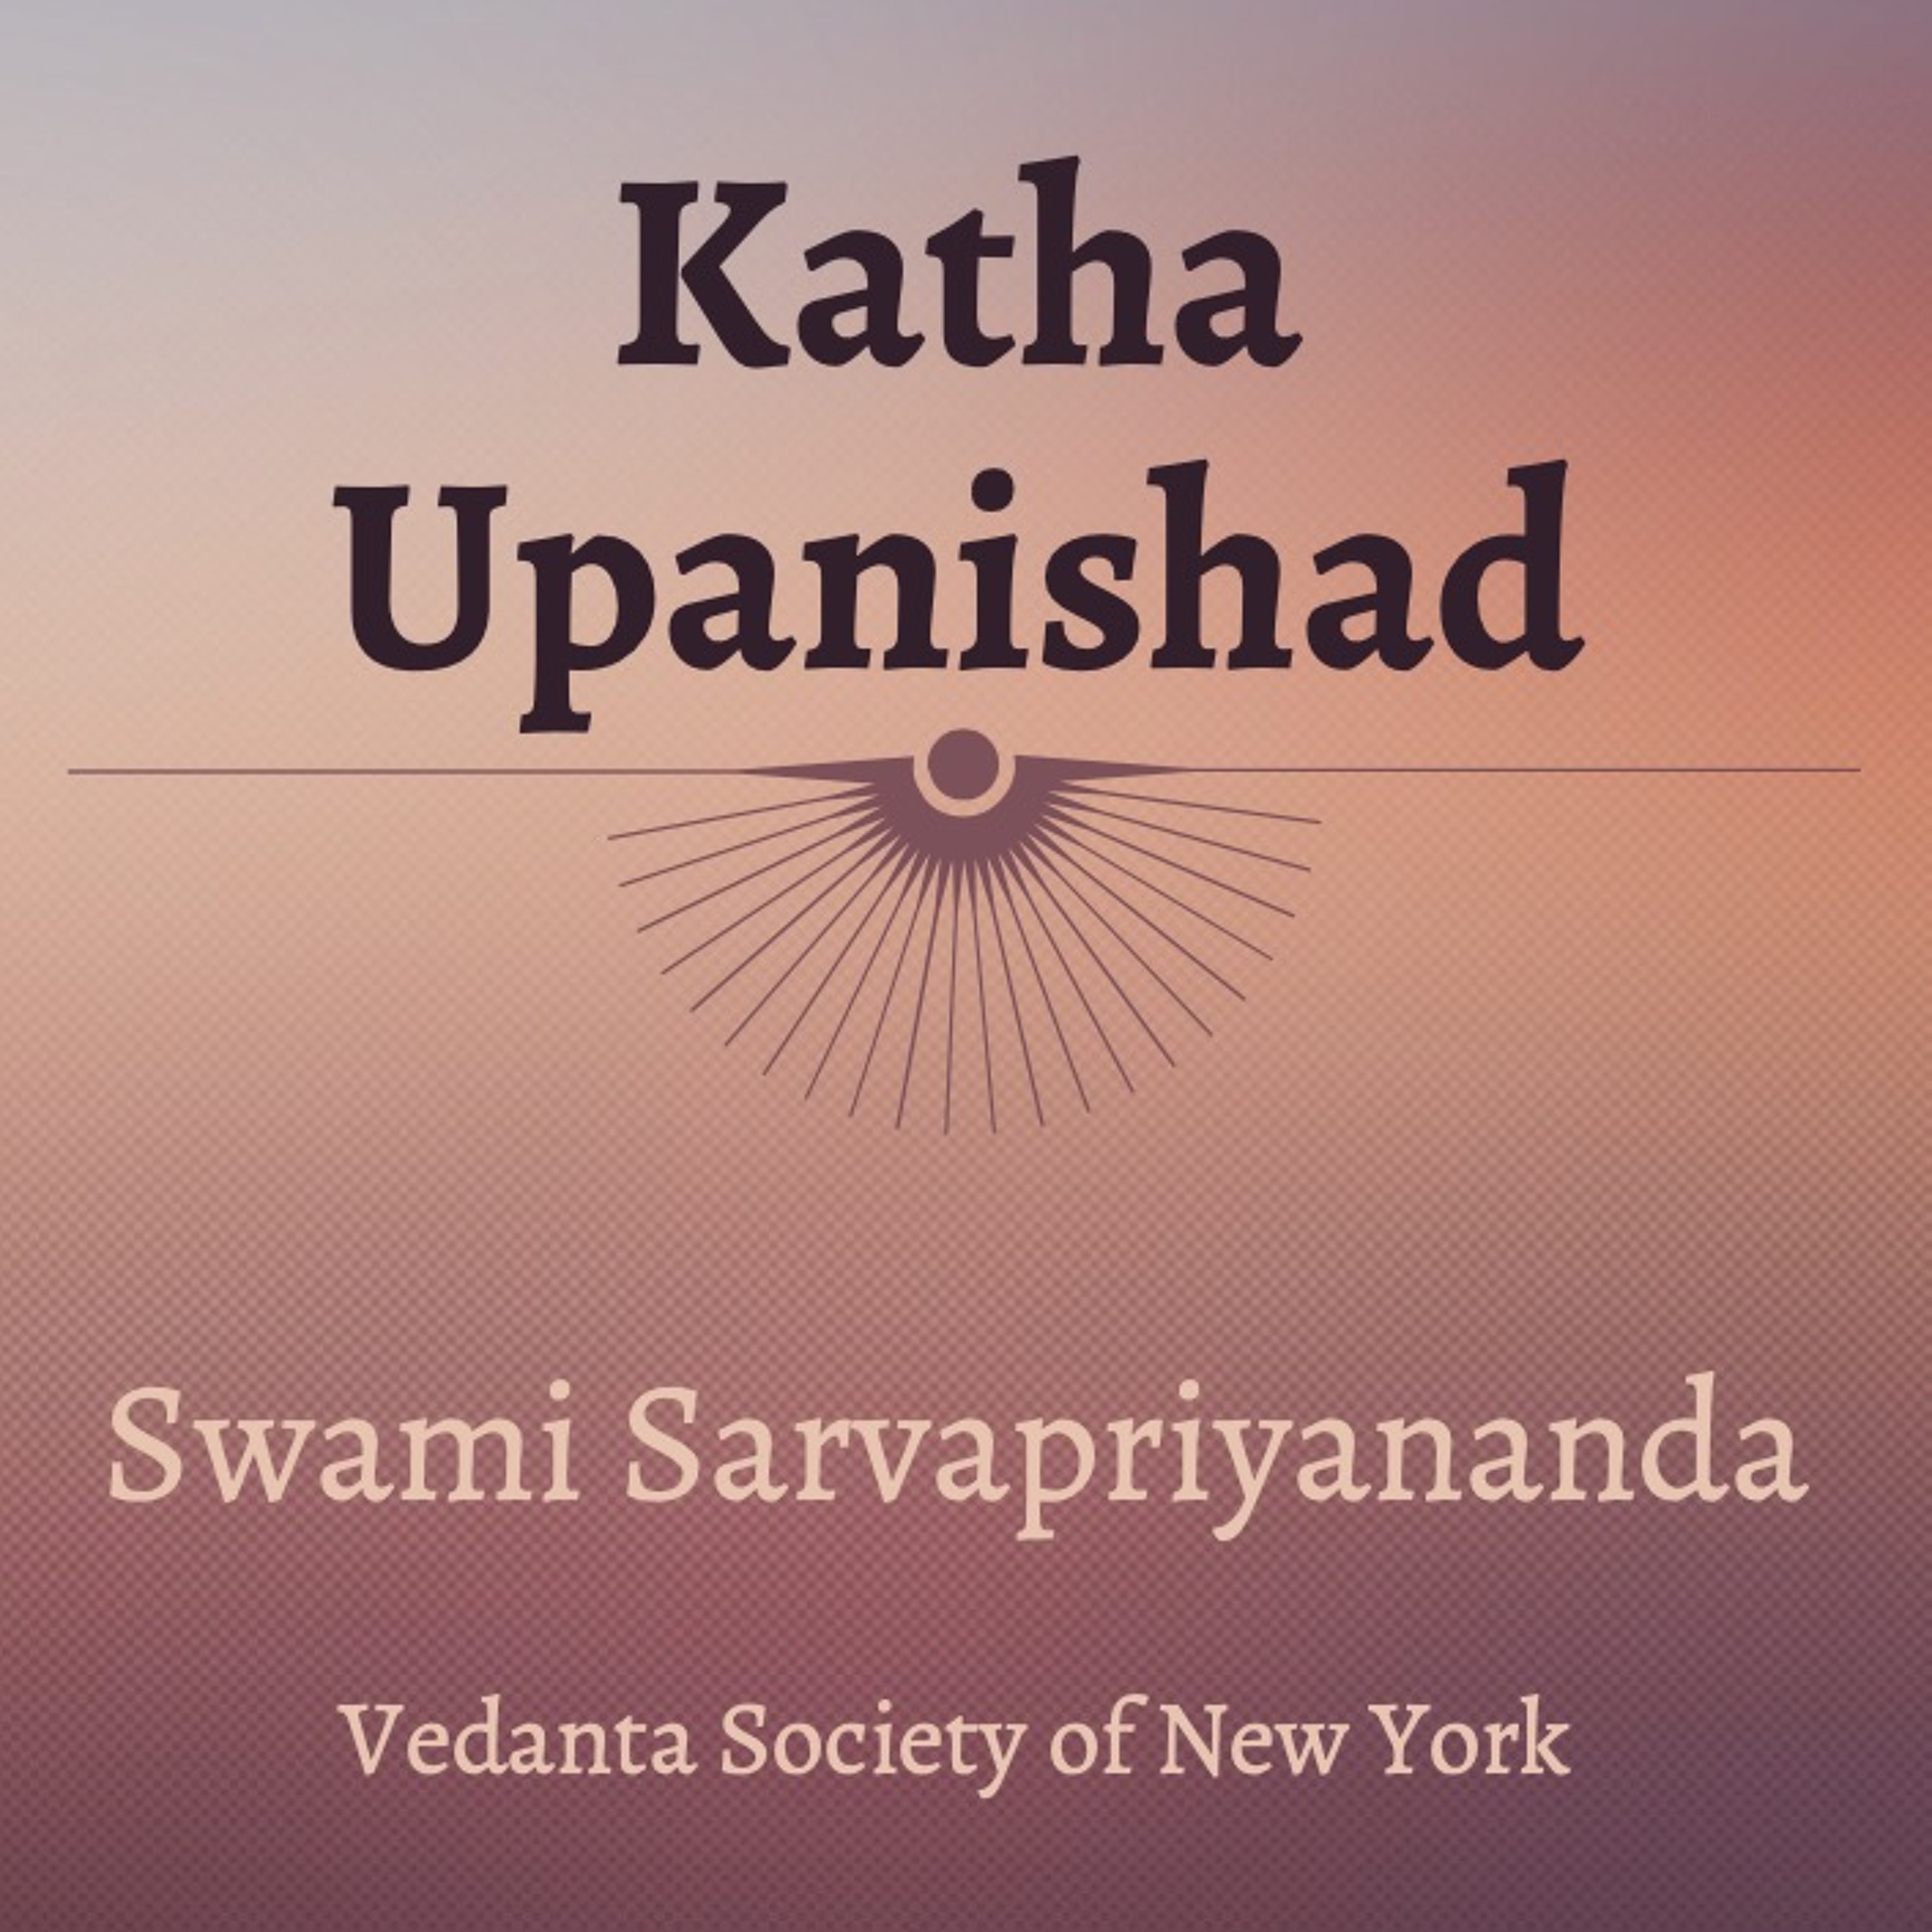 15. Katha Upanishad | Mantras 1.2.14 - 15 | Swami Sarvapriyananda